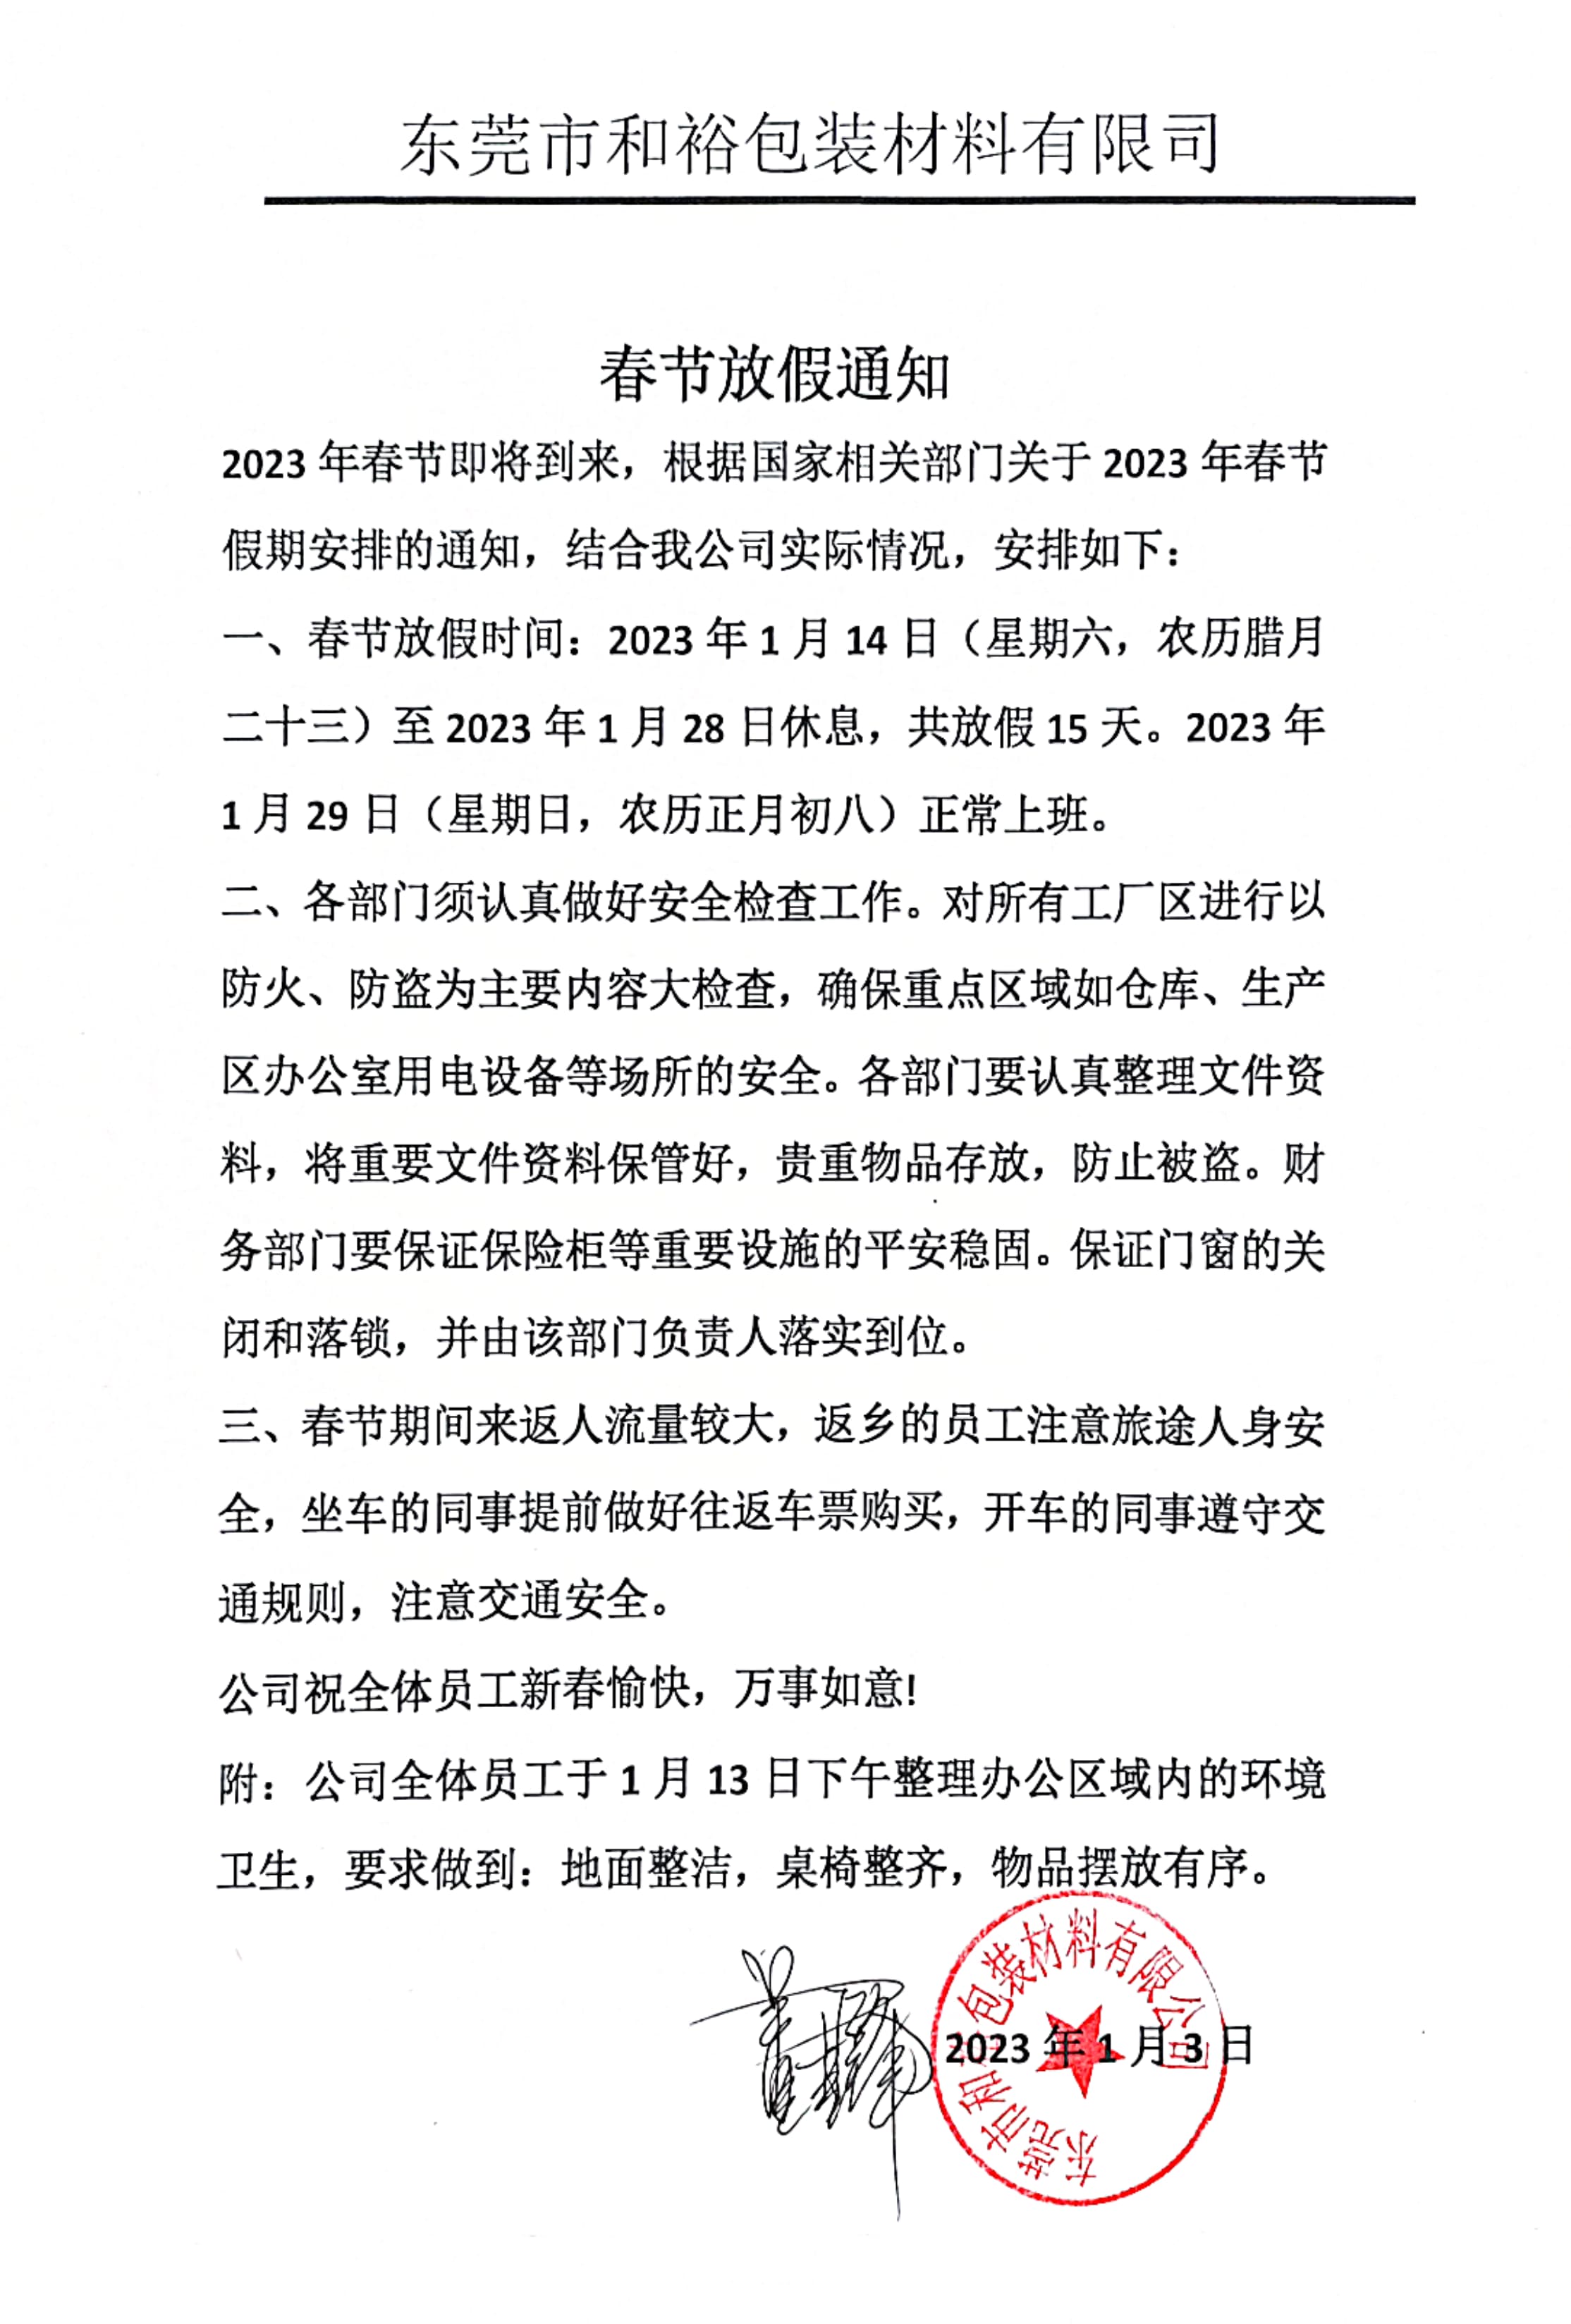 天津2023年和裕包装春节放假通知